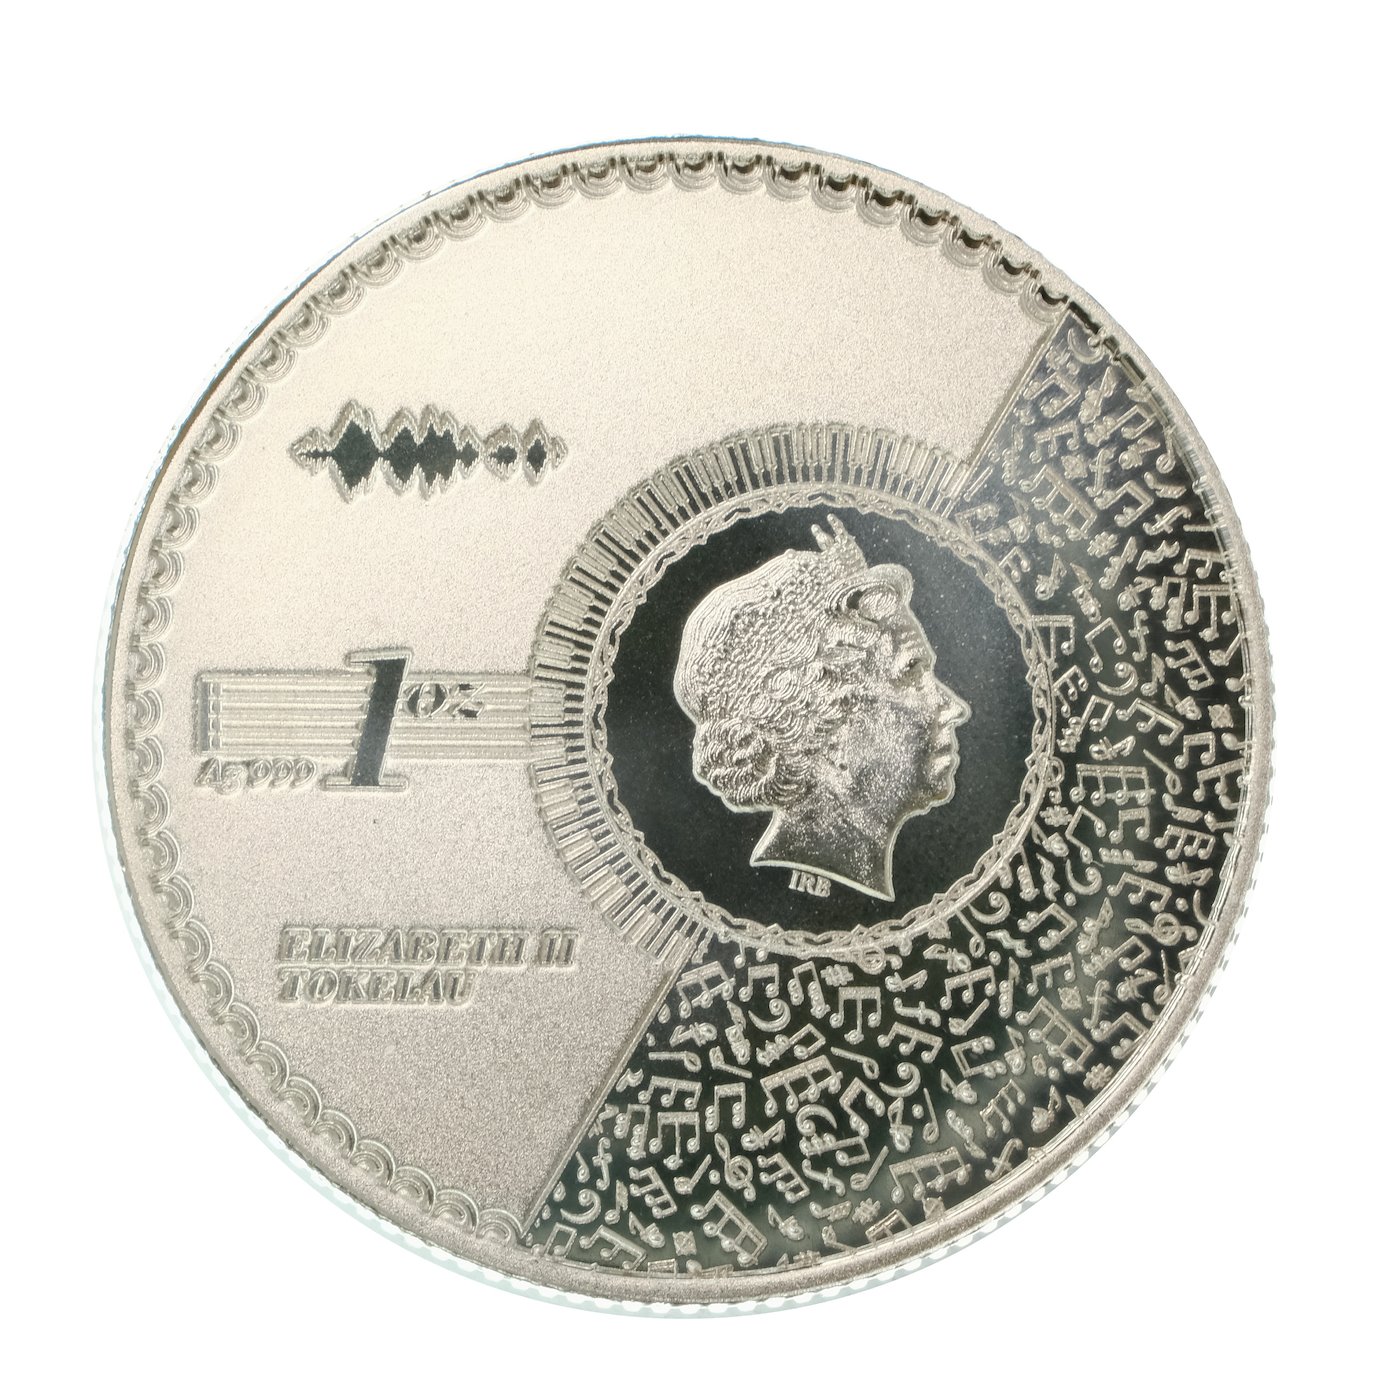 .. - Tokelau 2021 1 unce stříbrná mince VIVAT HUMANITAS, stříbro 999/1000, hrubá hmotnost 31,1 g